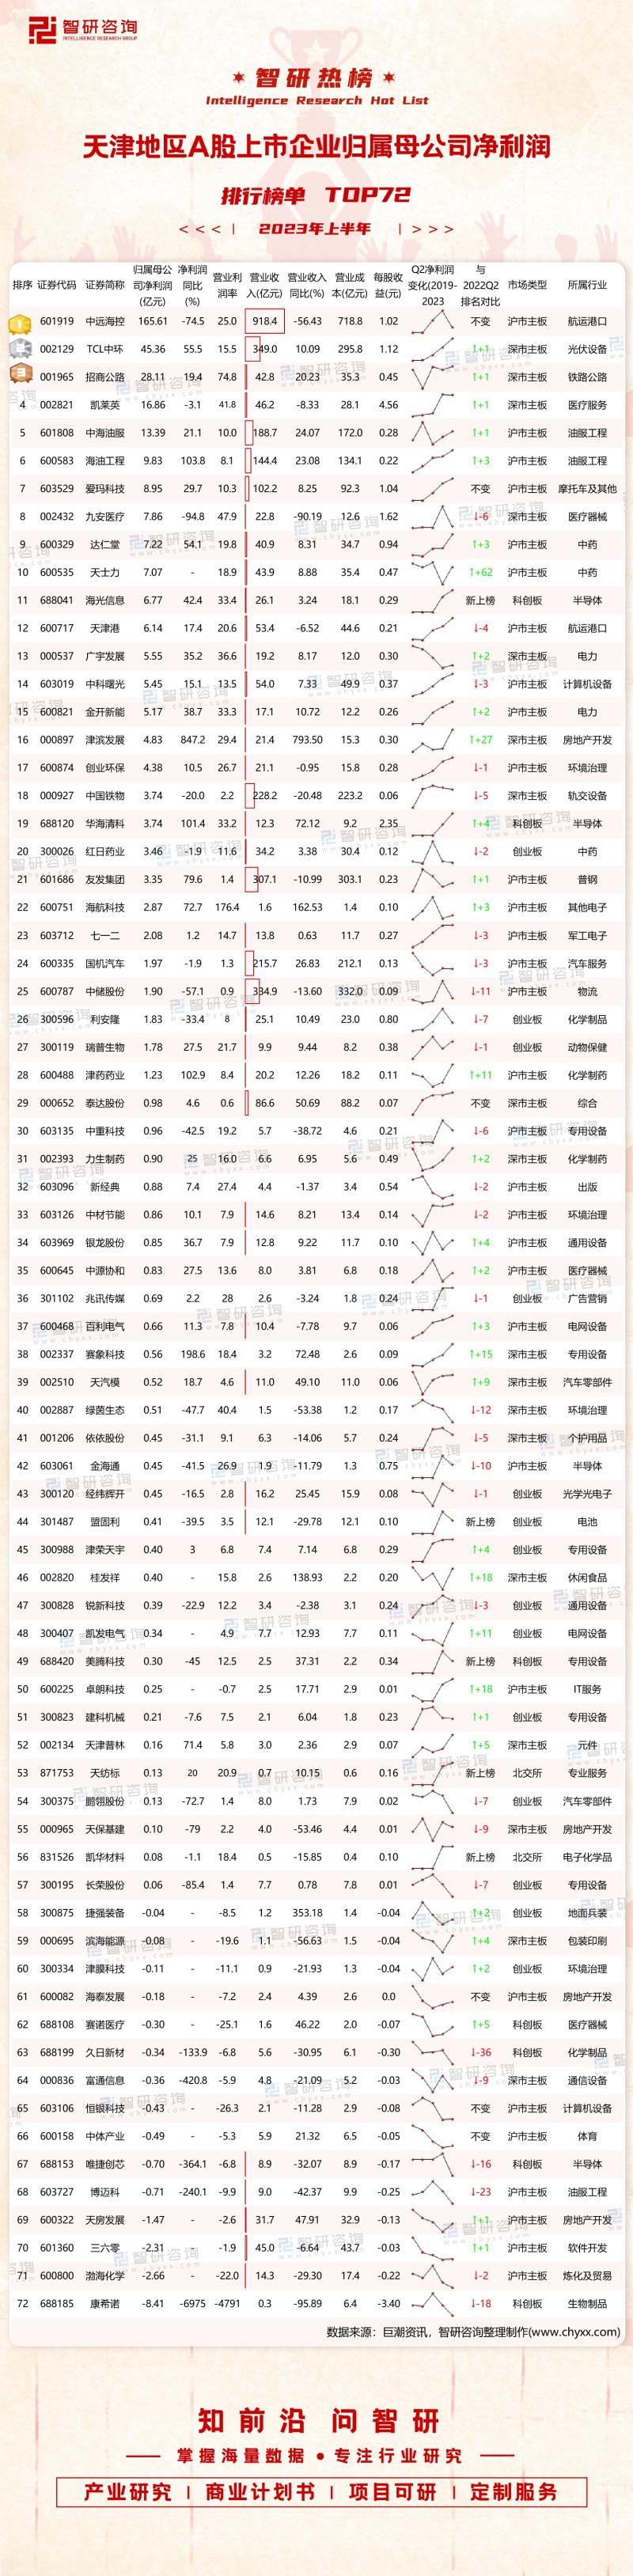 2023年上半年天津地区A股上市企业归属母公司净利润排行榜单TOP72